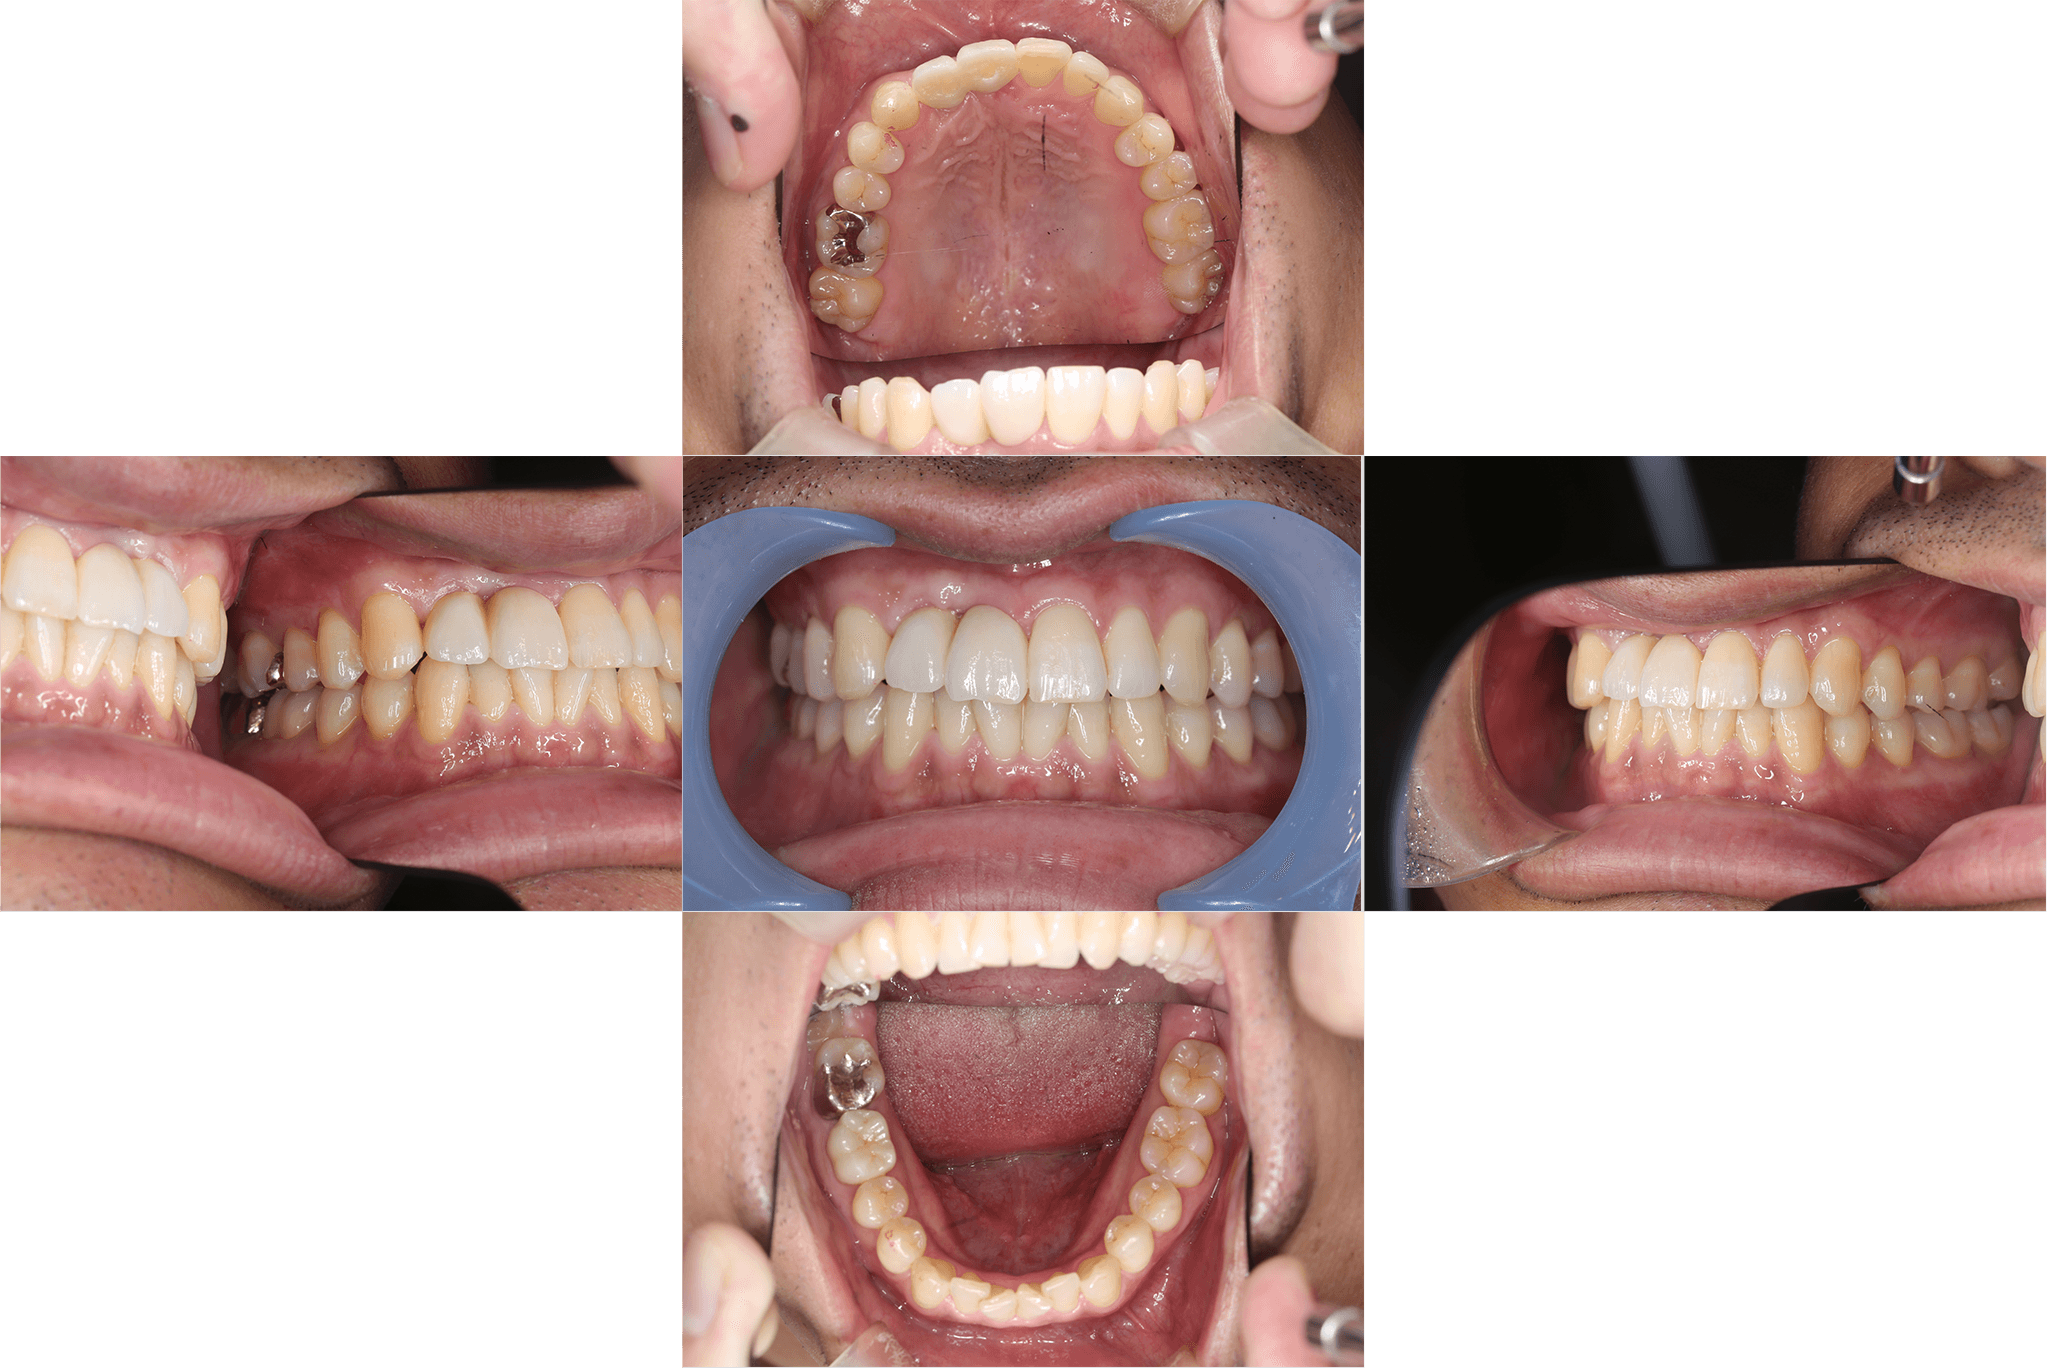 上顎前歯のインプラントによる治療抜歯後待機してから結合組織移植を併用して埋入 after